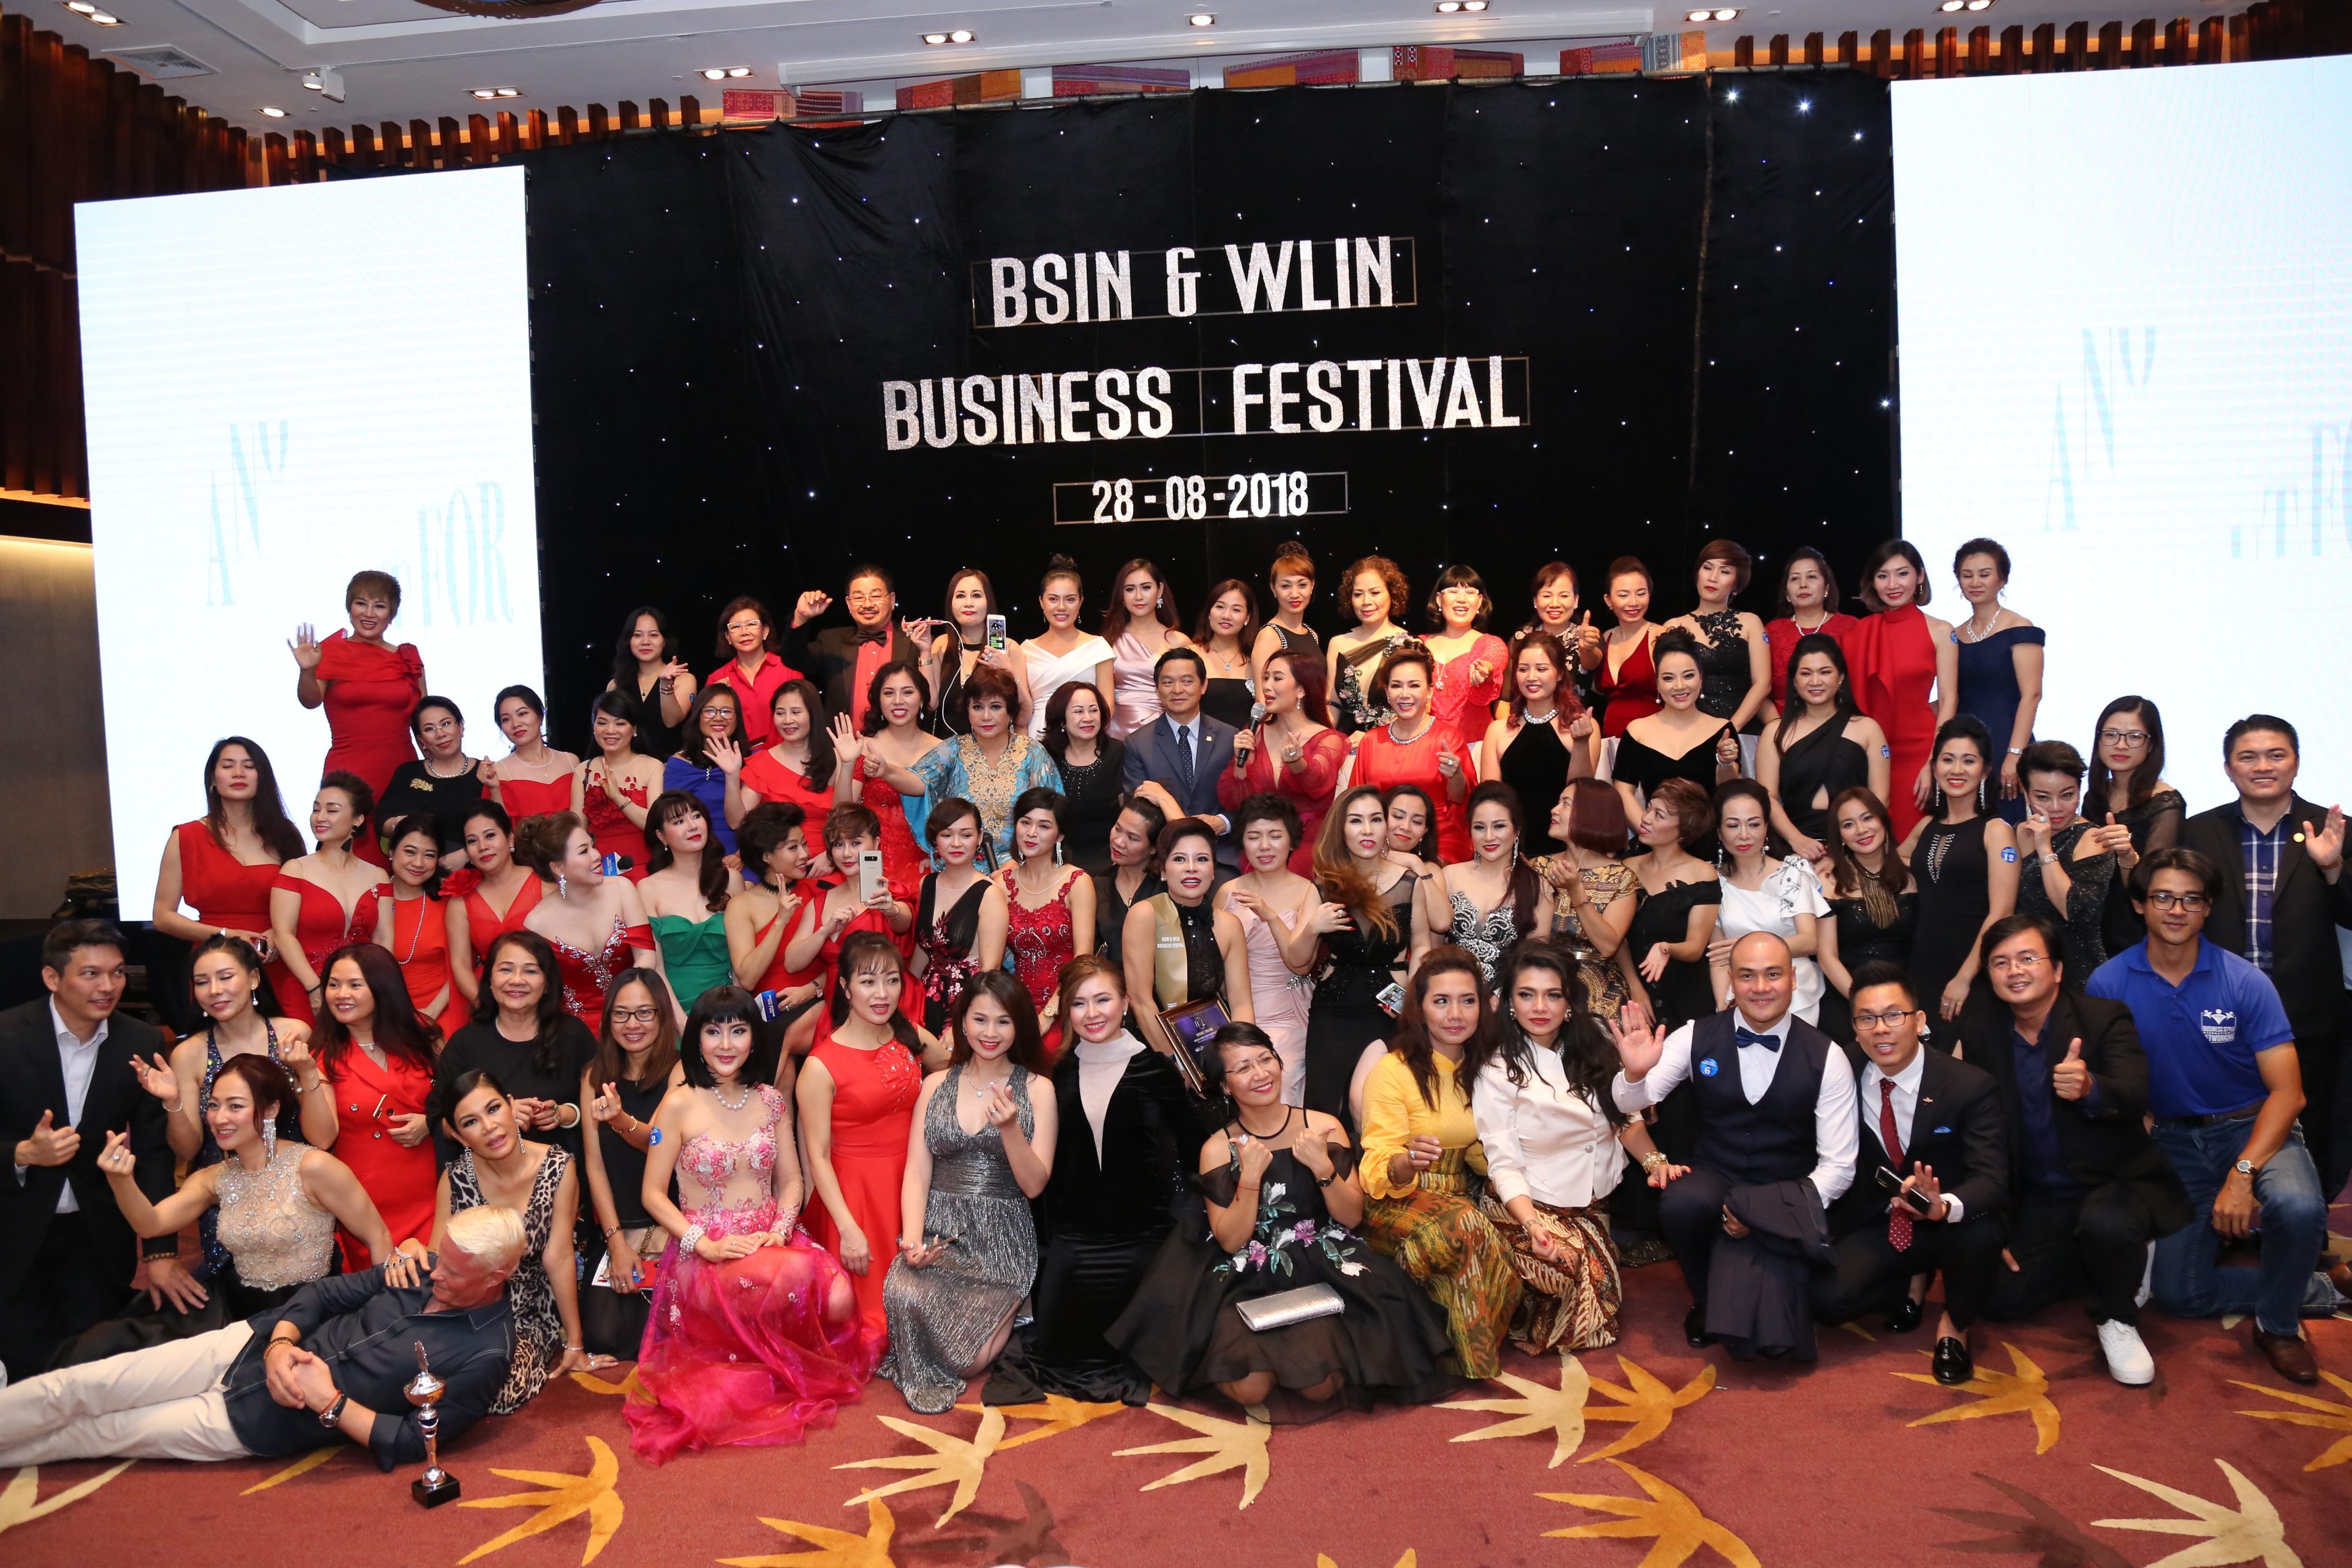 Sự kiện “BSIN & WLIN Business Festival”: Lưu giữ những kỷ niệm đẹp